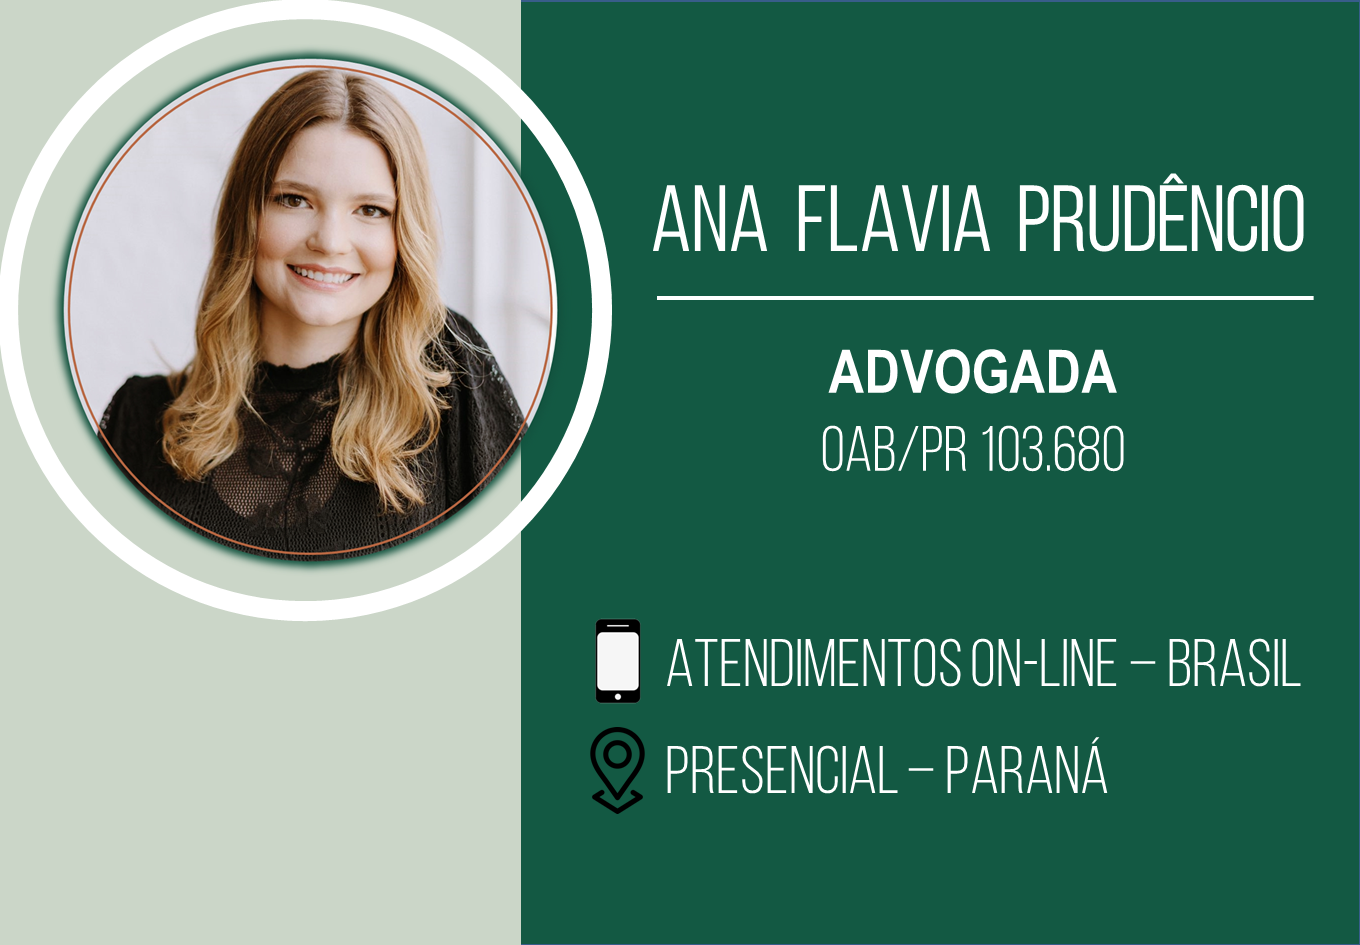 AGENDA - ANA FLAVIA PRUDÊNCIO